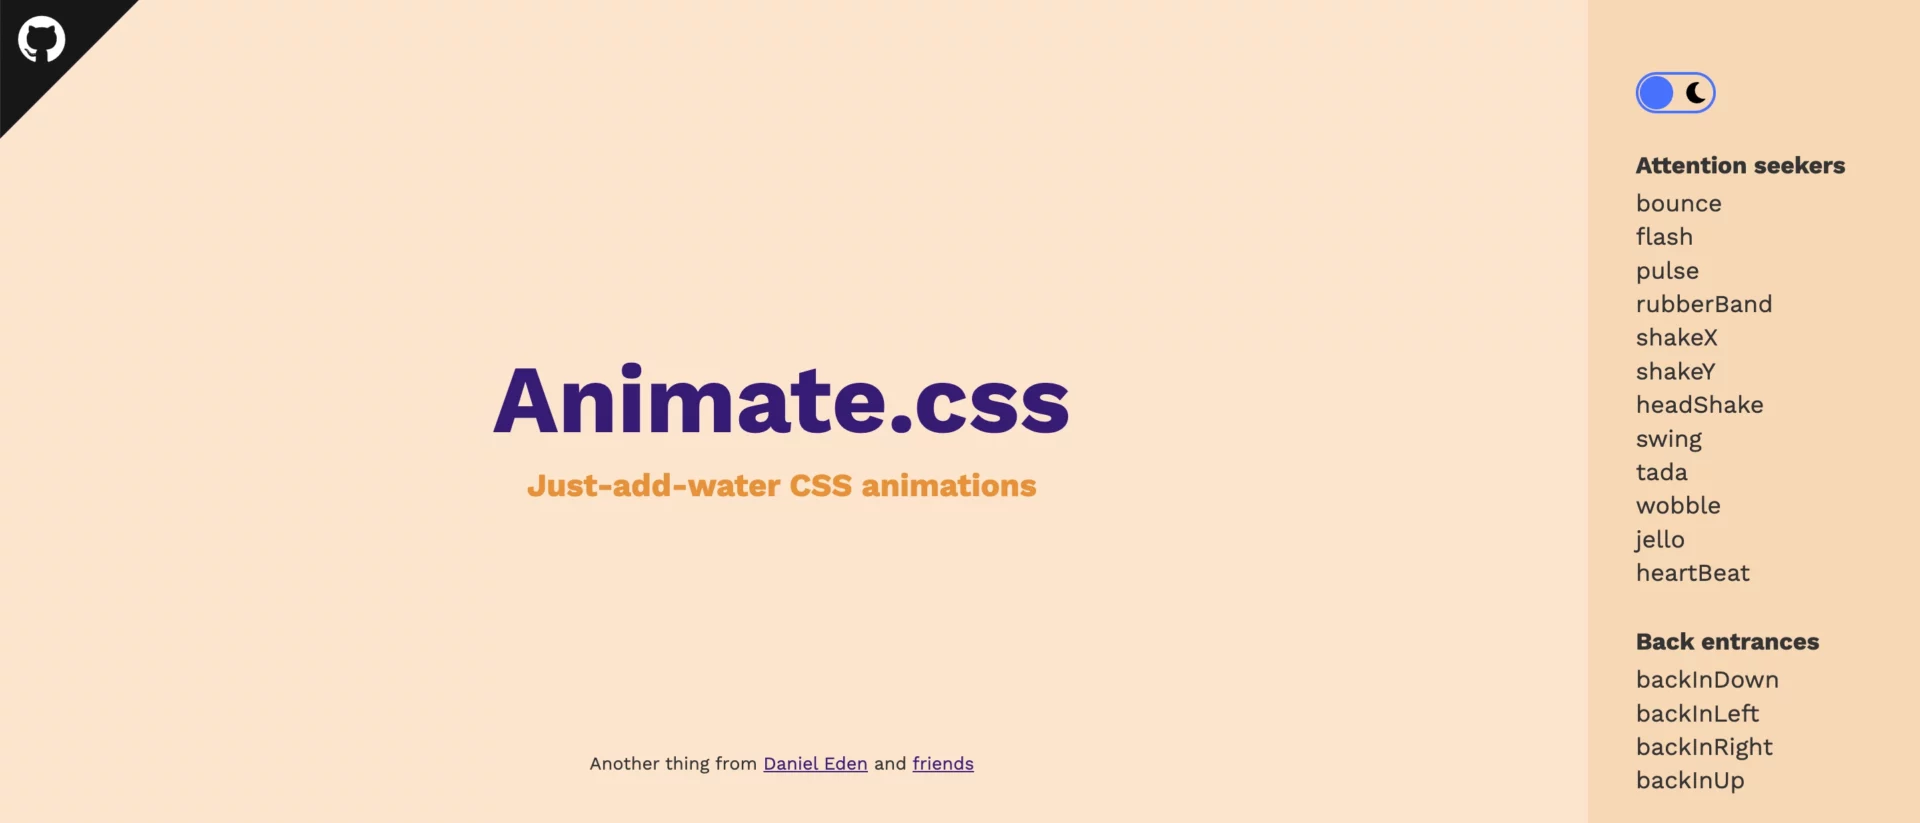 Galeria de exemplos de animações CSS - prontas para usar em uma landing page